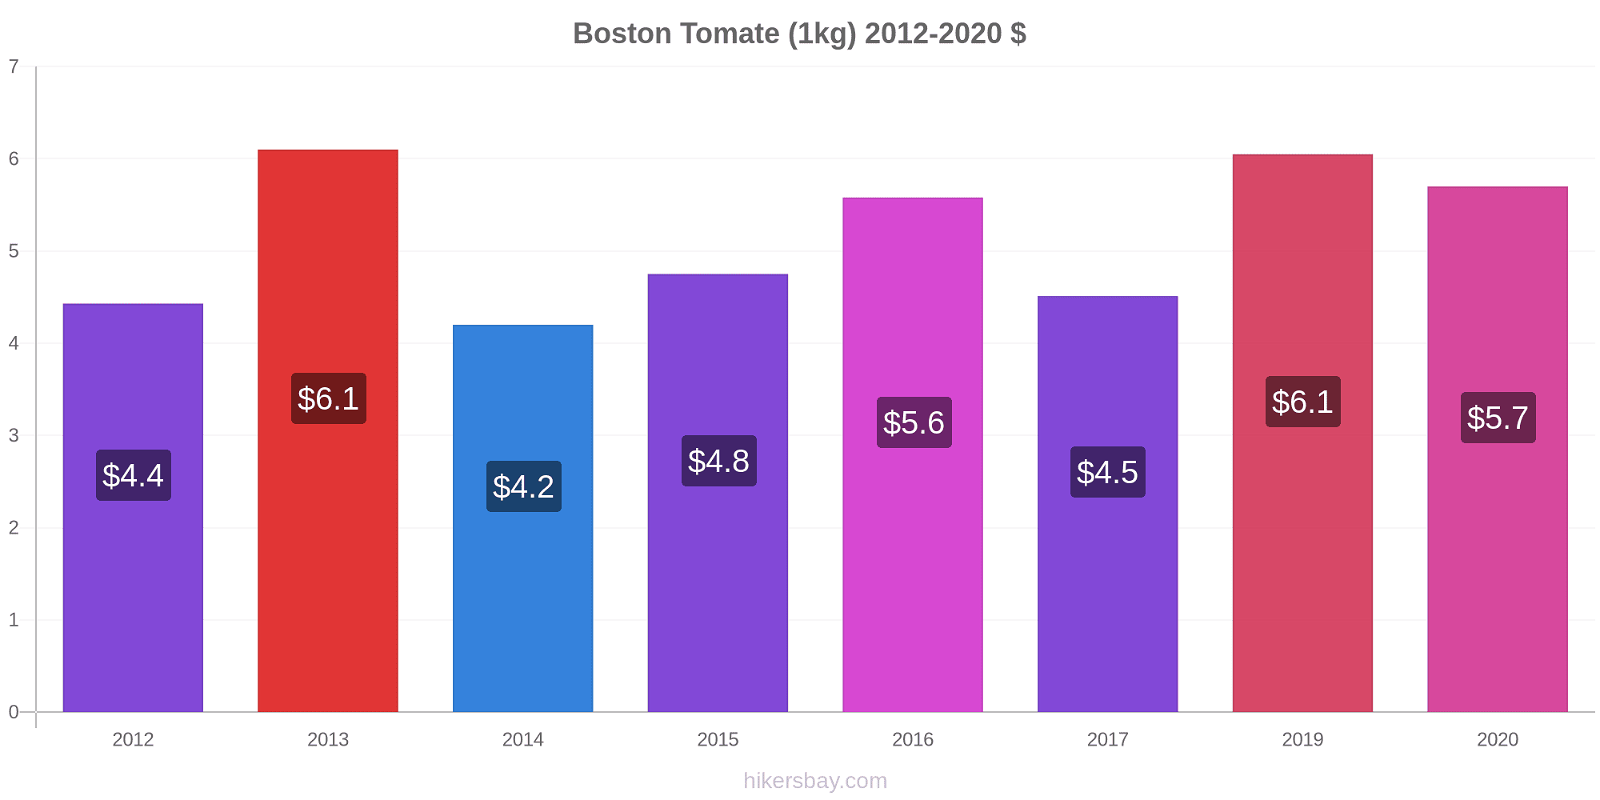 Boston variação de preço Tomate (1kg) hikersbay.com